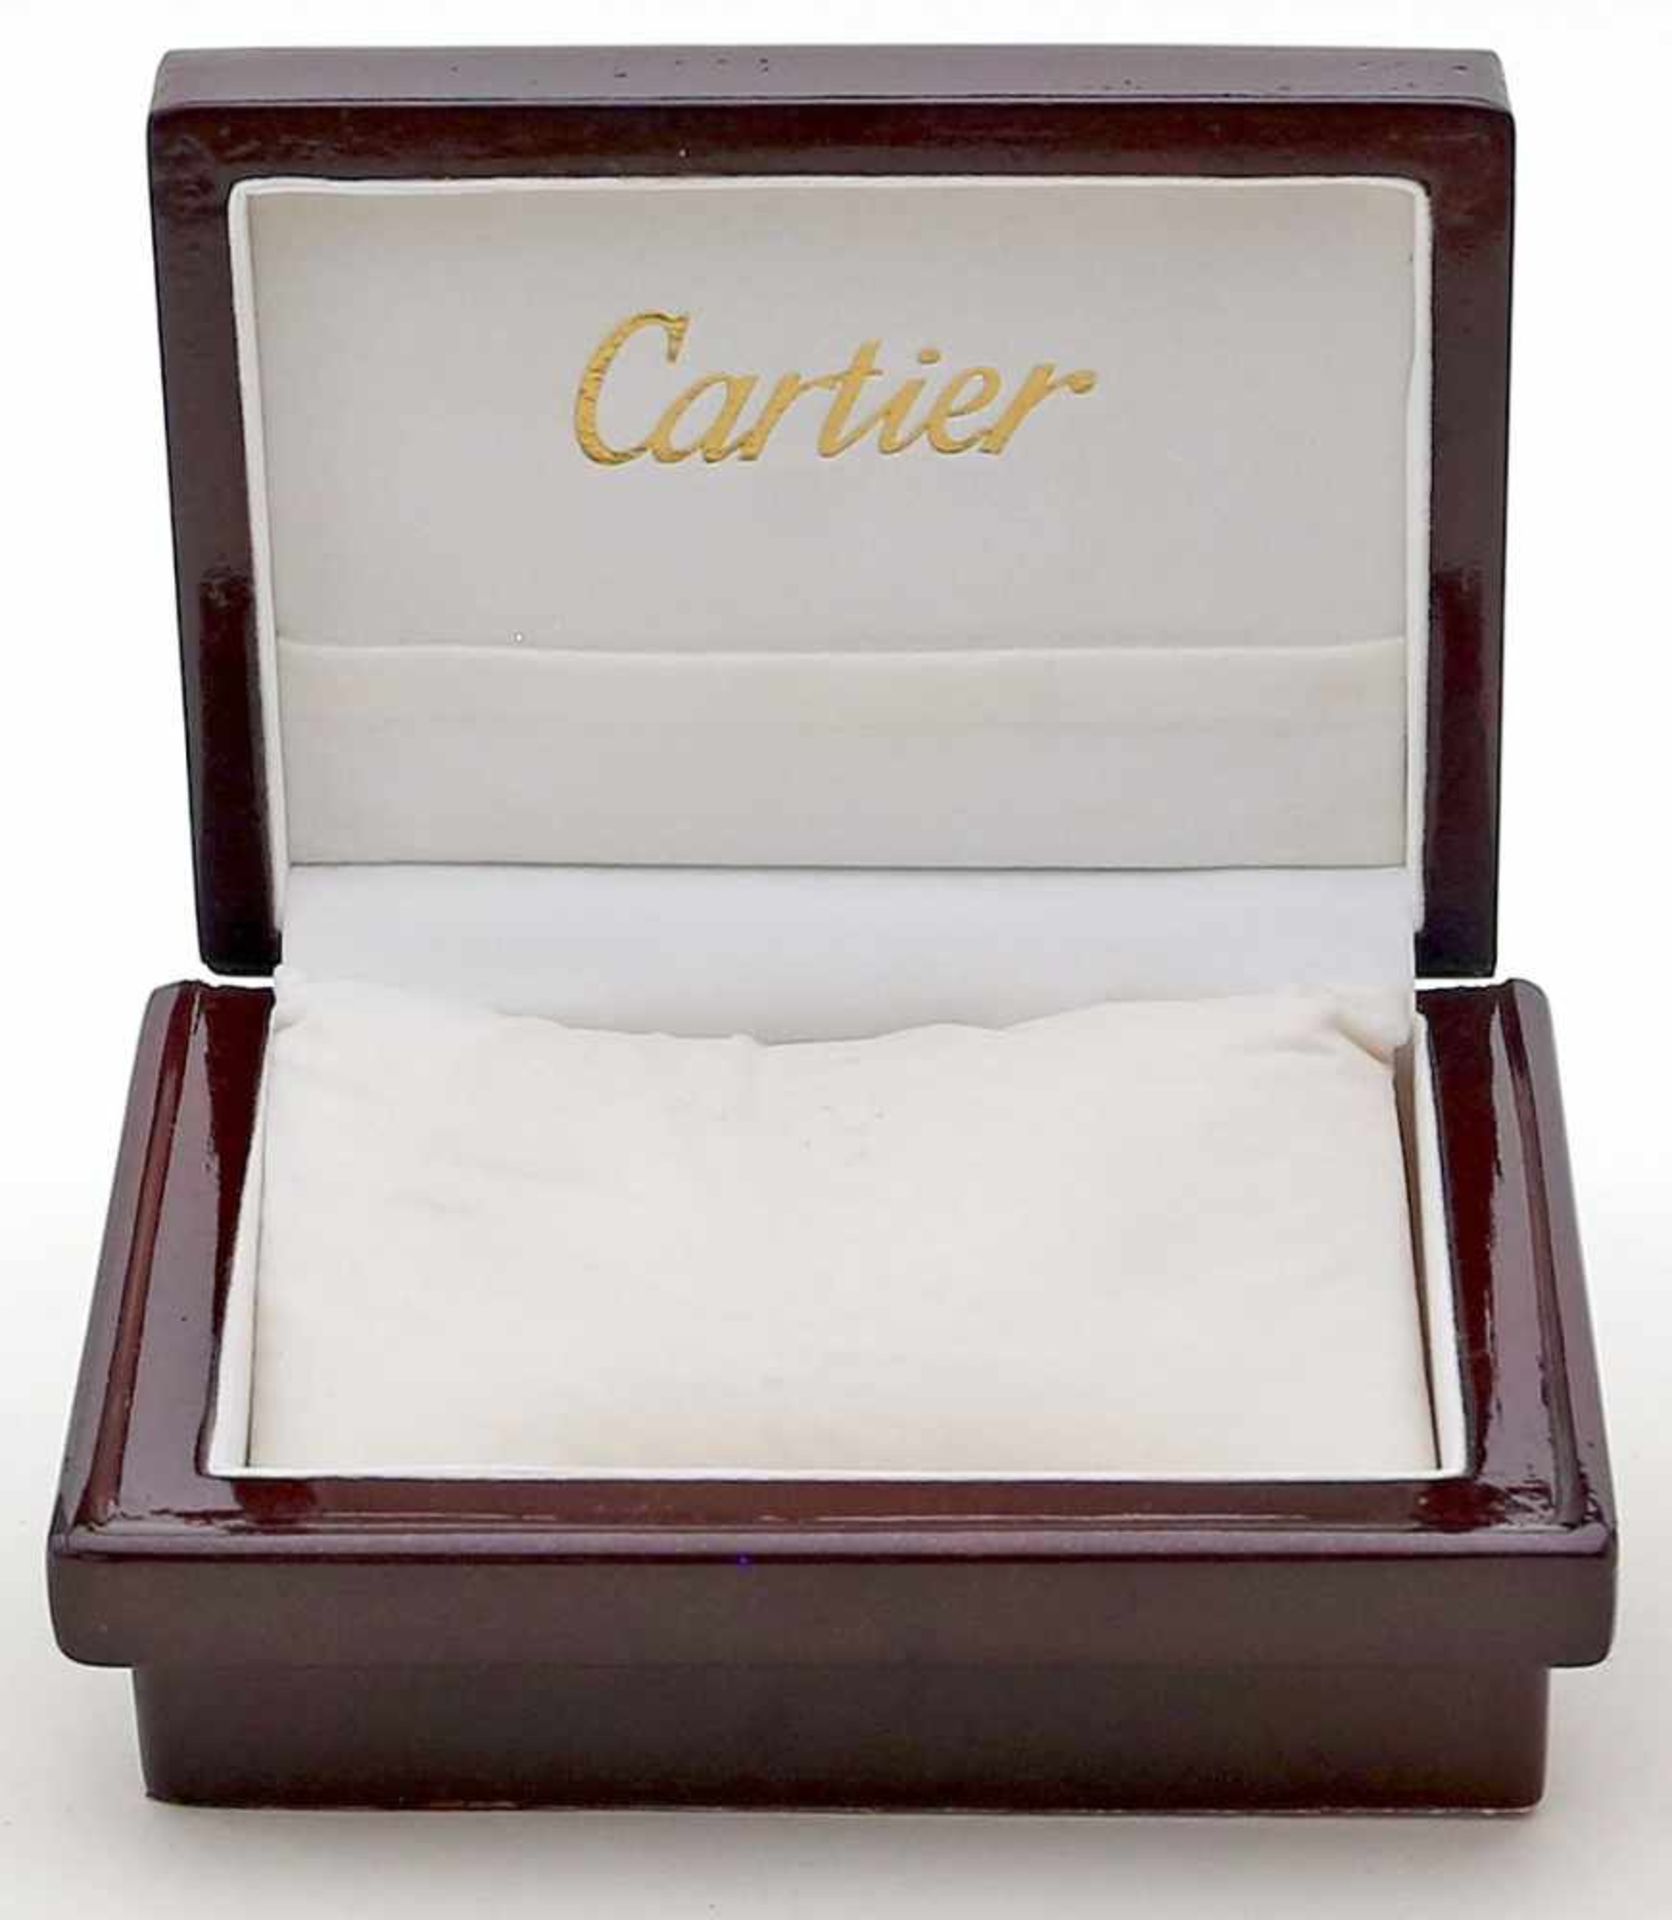 Armbanduhrenschatulle "Cartier".L. Gebrauchsspuren. Mit Umkarton. - Bild 2 aus 2